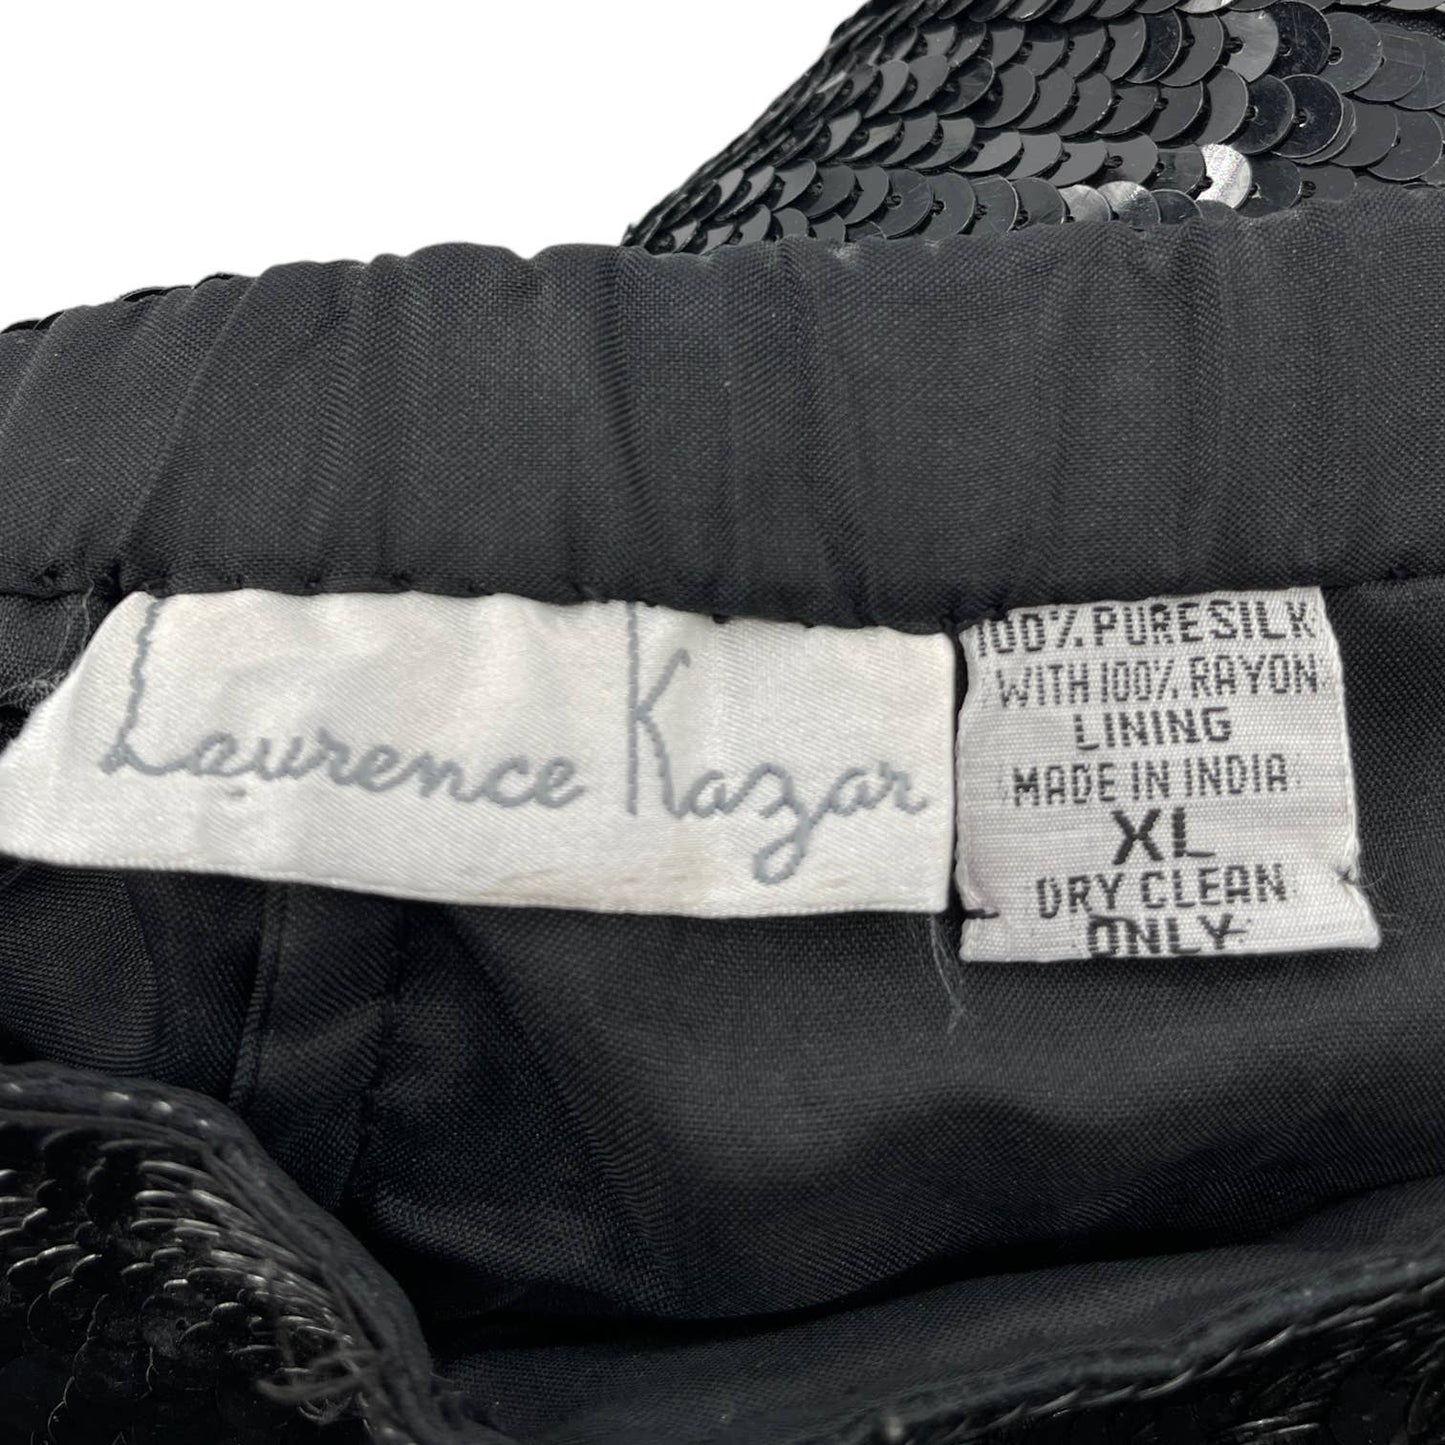 Vintage 90s Black Sequined Dress Shorts Glam Cabaret Lawrence Kazar Size XL